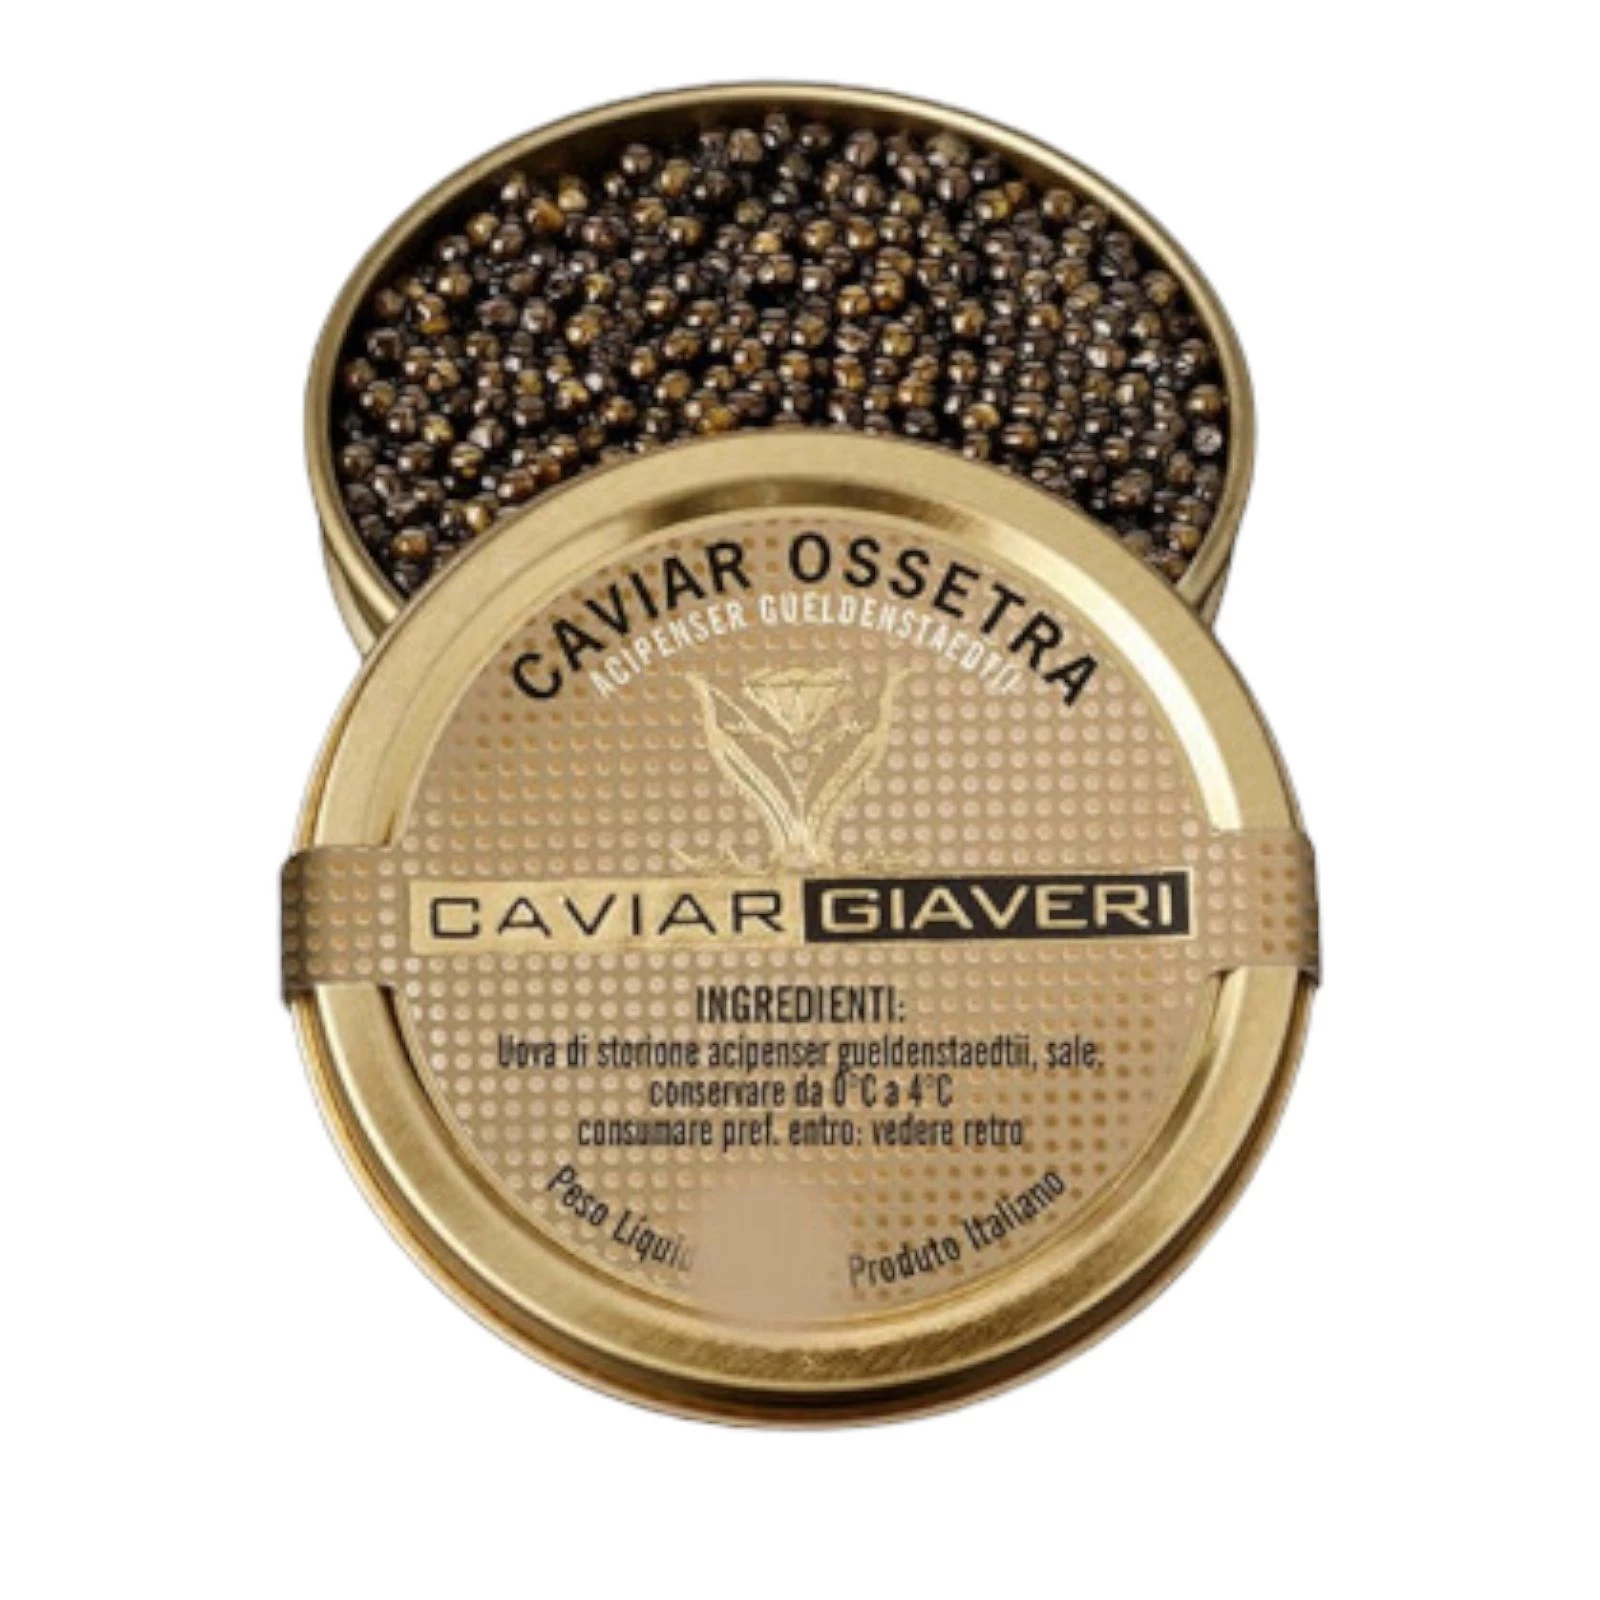 Caviar Giaveri Ossetra 15g